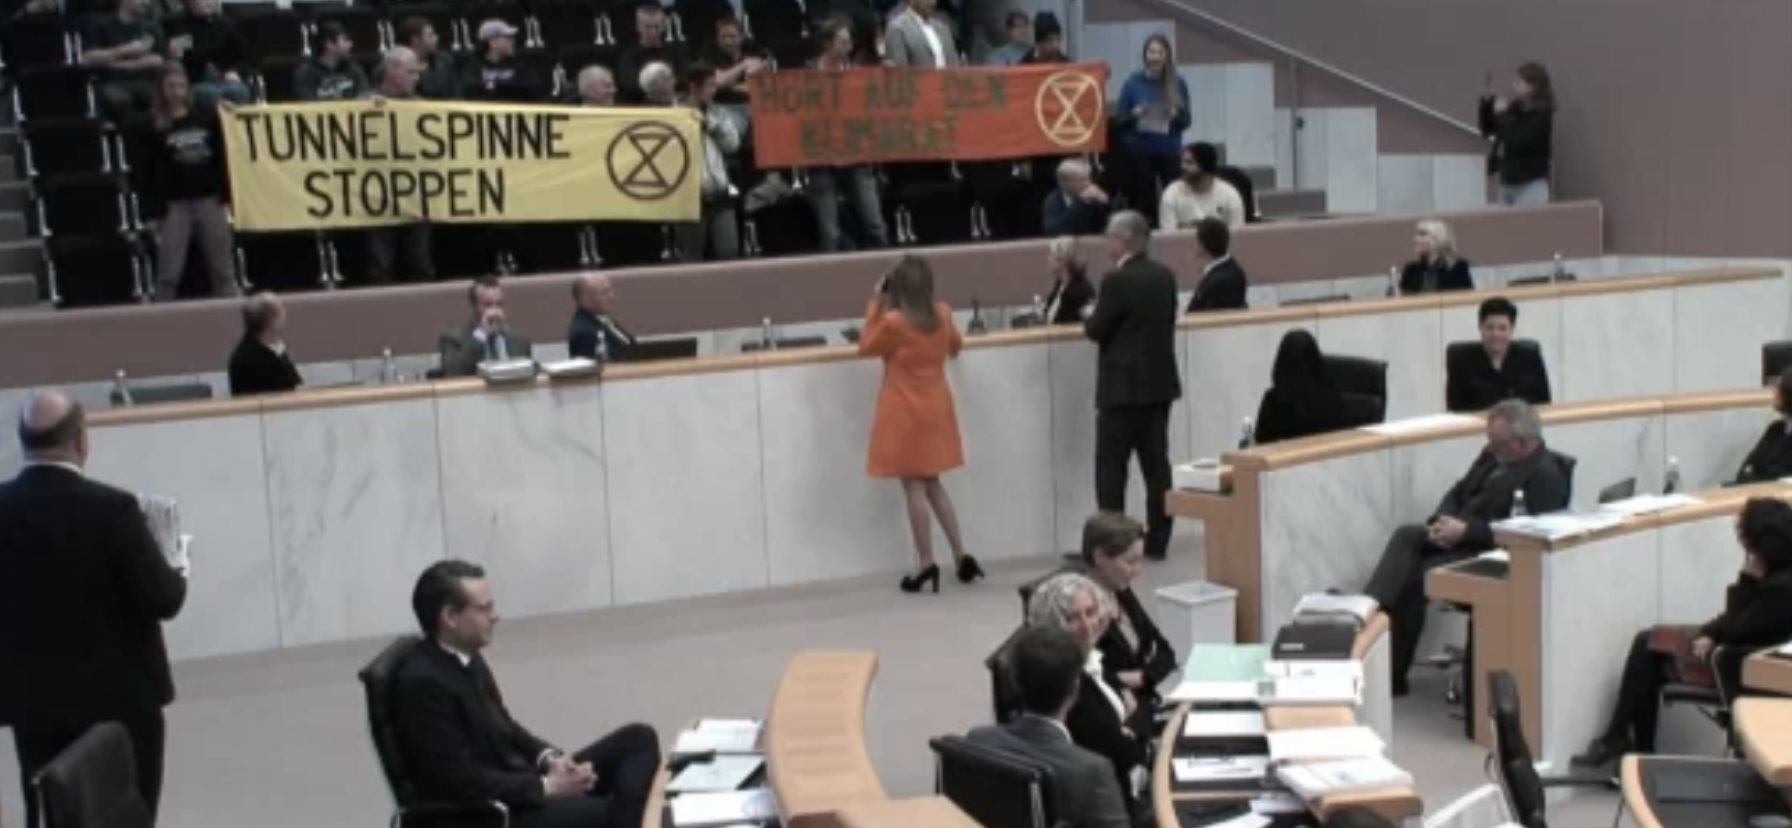 Landtagspräsident Harald Sonderegger und Landtagsdirektorin Borghild Goldgruber-Rainer versuchten die Klimaaktivisten dazu zu bewegen, sich zu ruhig zu verhalten und die Transparente einzurollen. (Bild: Schlingensiepen)